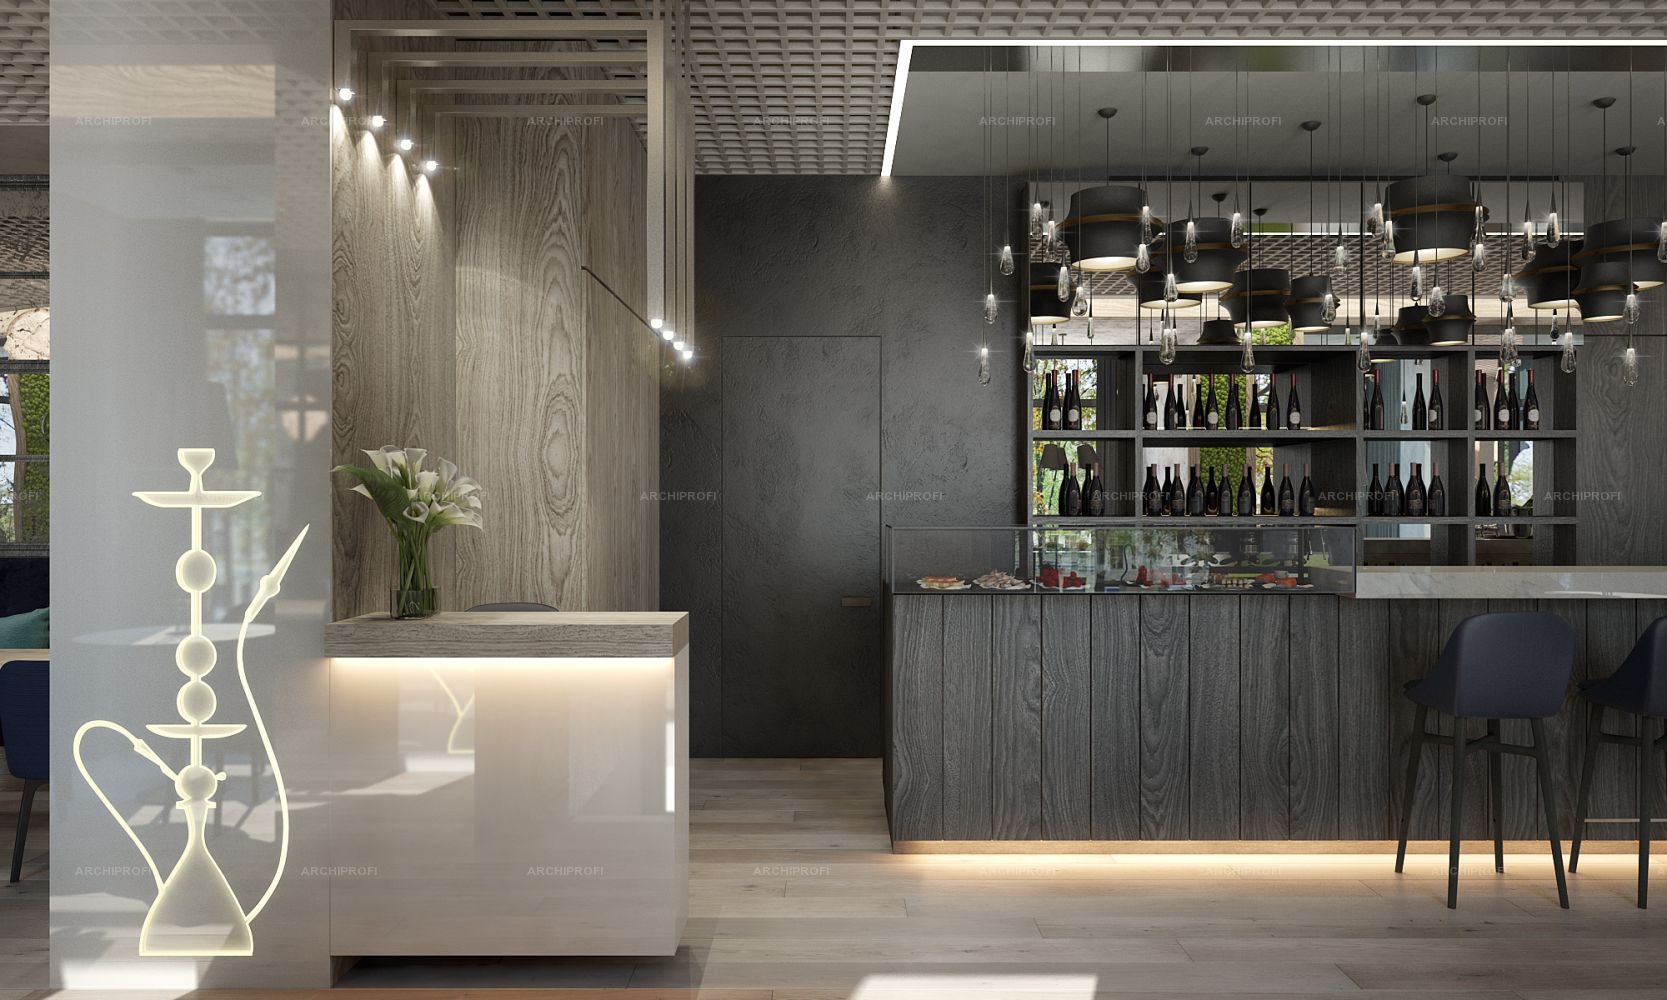 Русский стиль дизайн интерьера архитектура гостиниц отелей ресторанов кафе баров